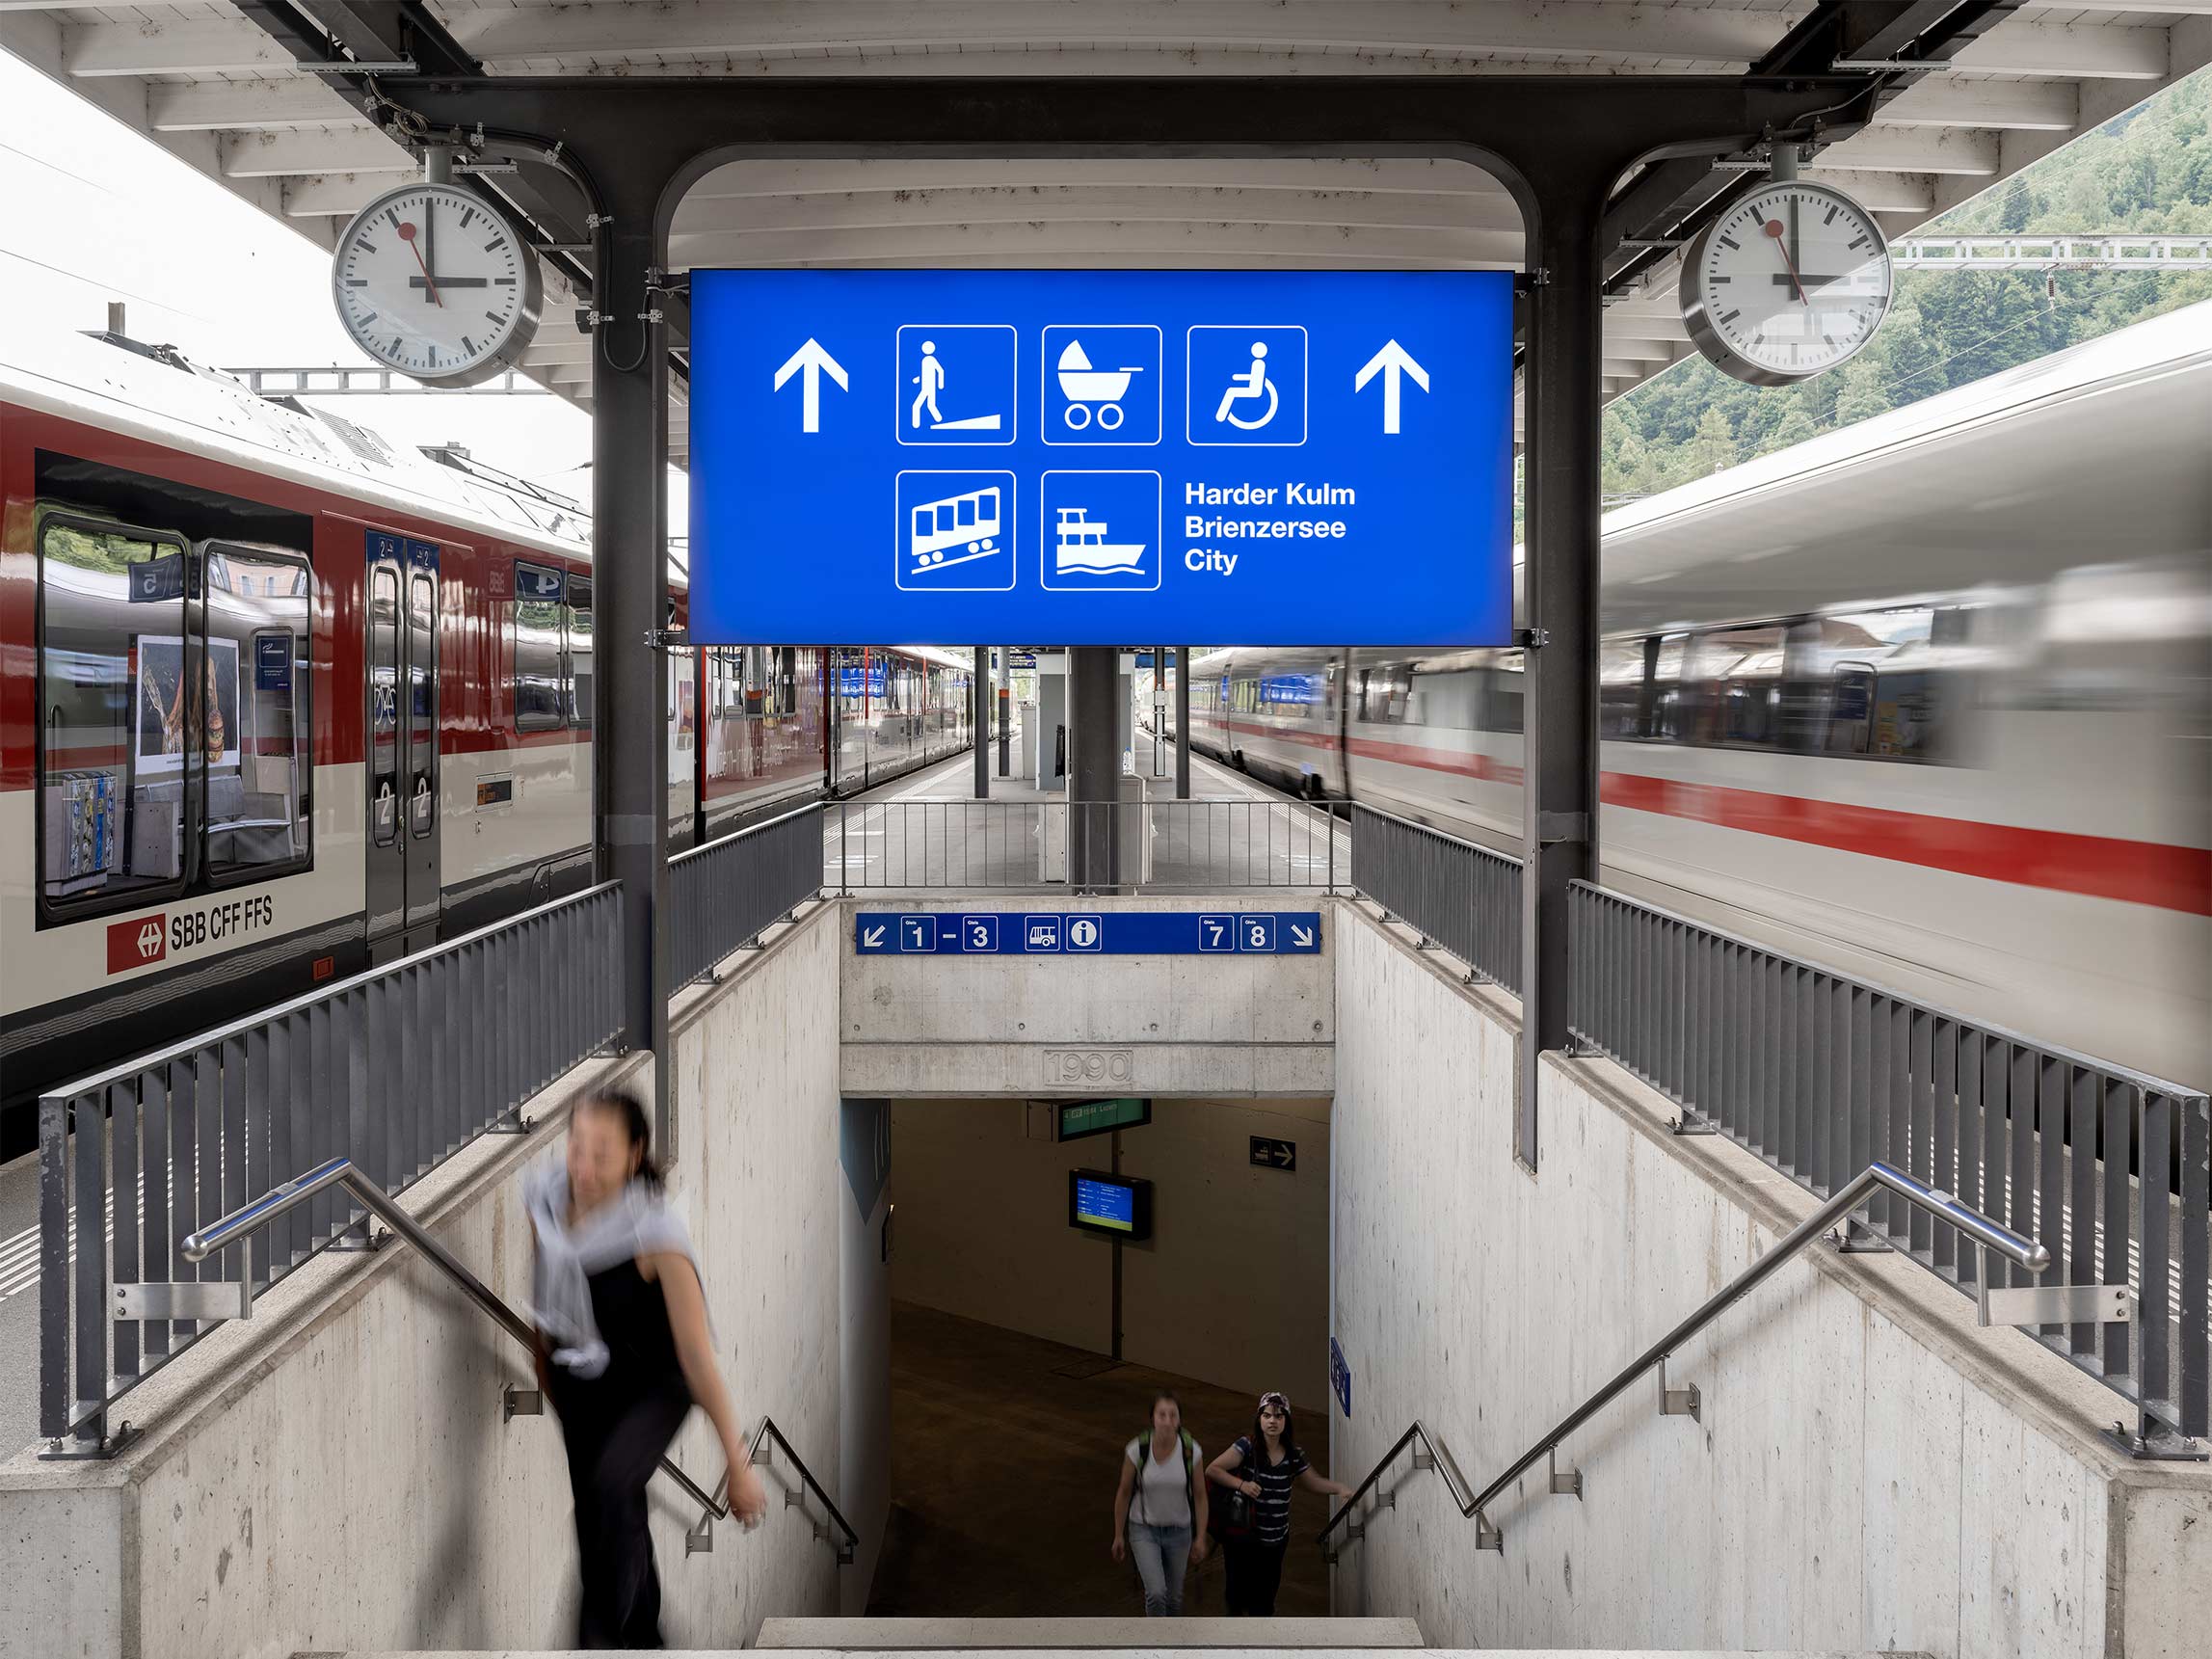 Bahnhof Interlaken Ost Orientierung Kundenlenkung Signaletik